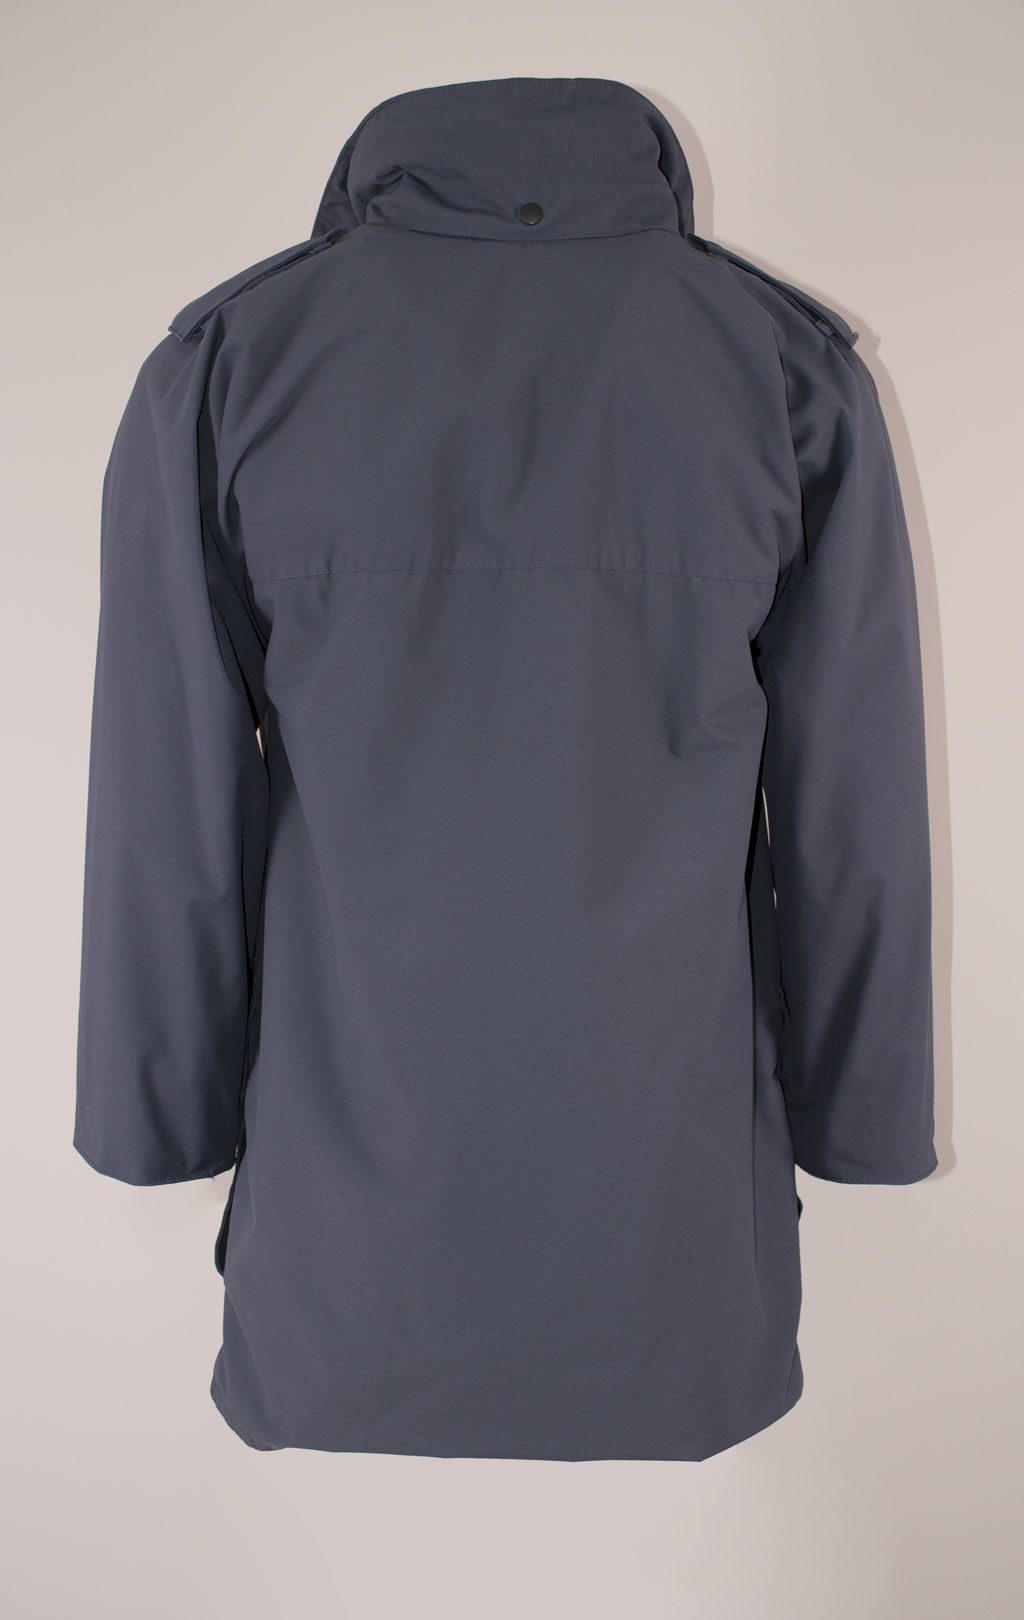 Куртка непромокаемая мембрана с капюшоном navy б/у Англия